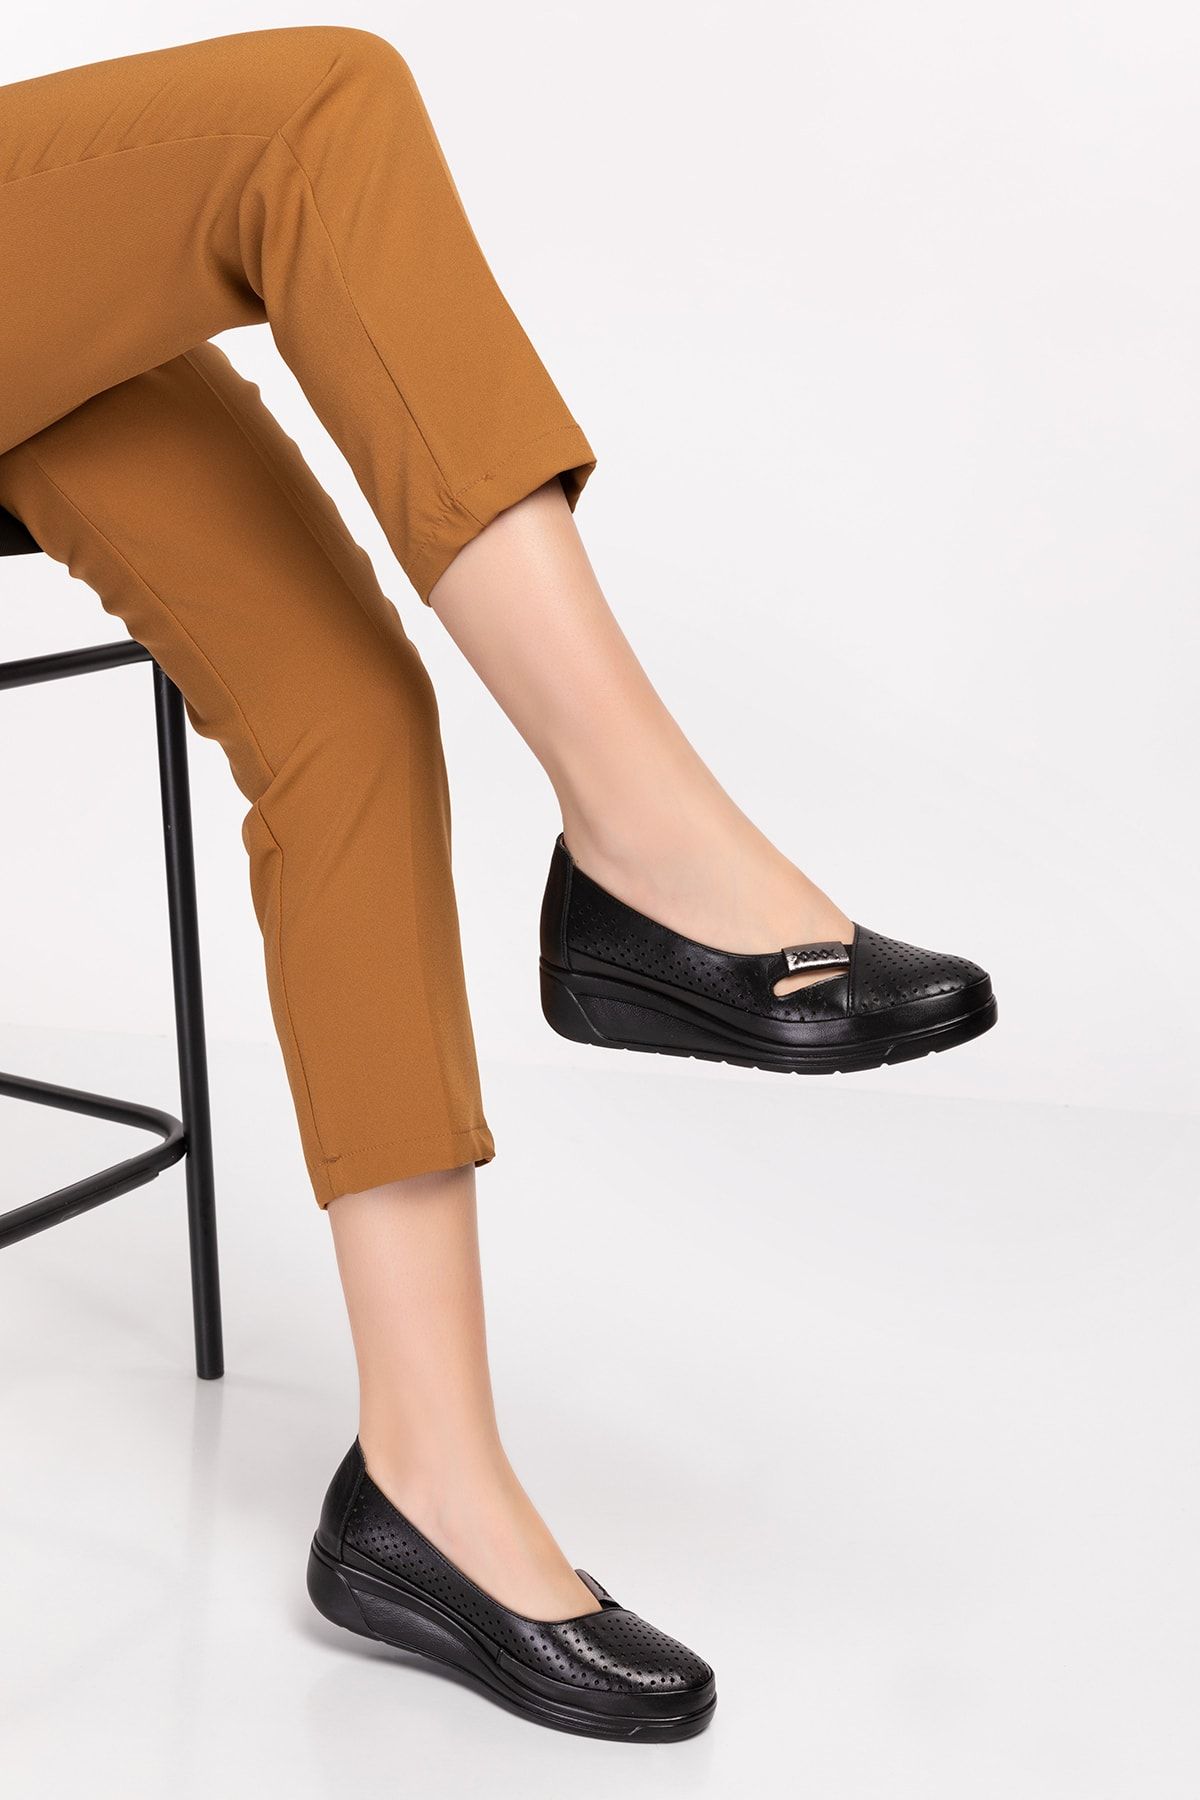 Akgün Terlik Kadın Siyah Hakiki Deri Ortopedik Ayakkabı